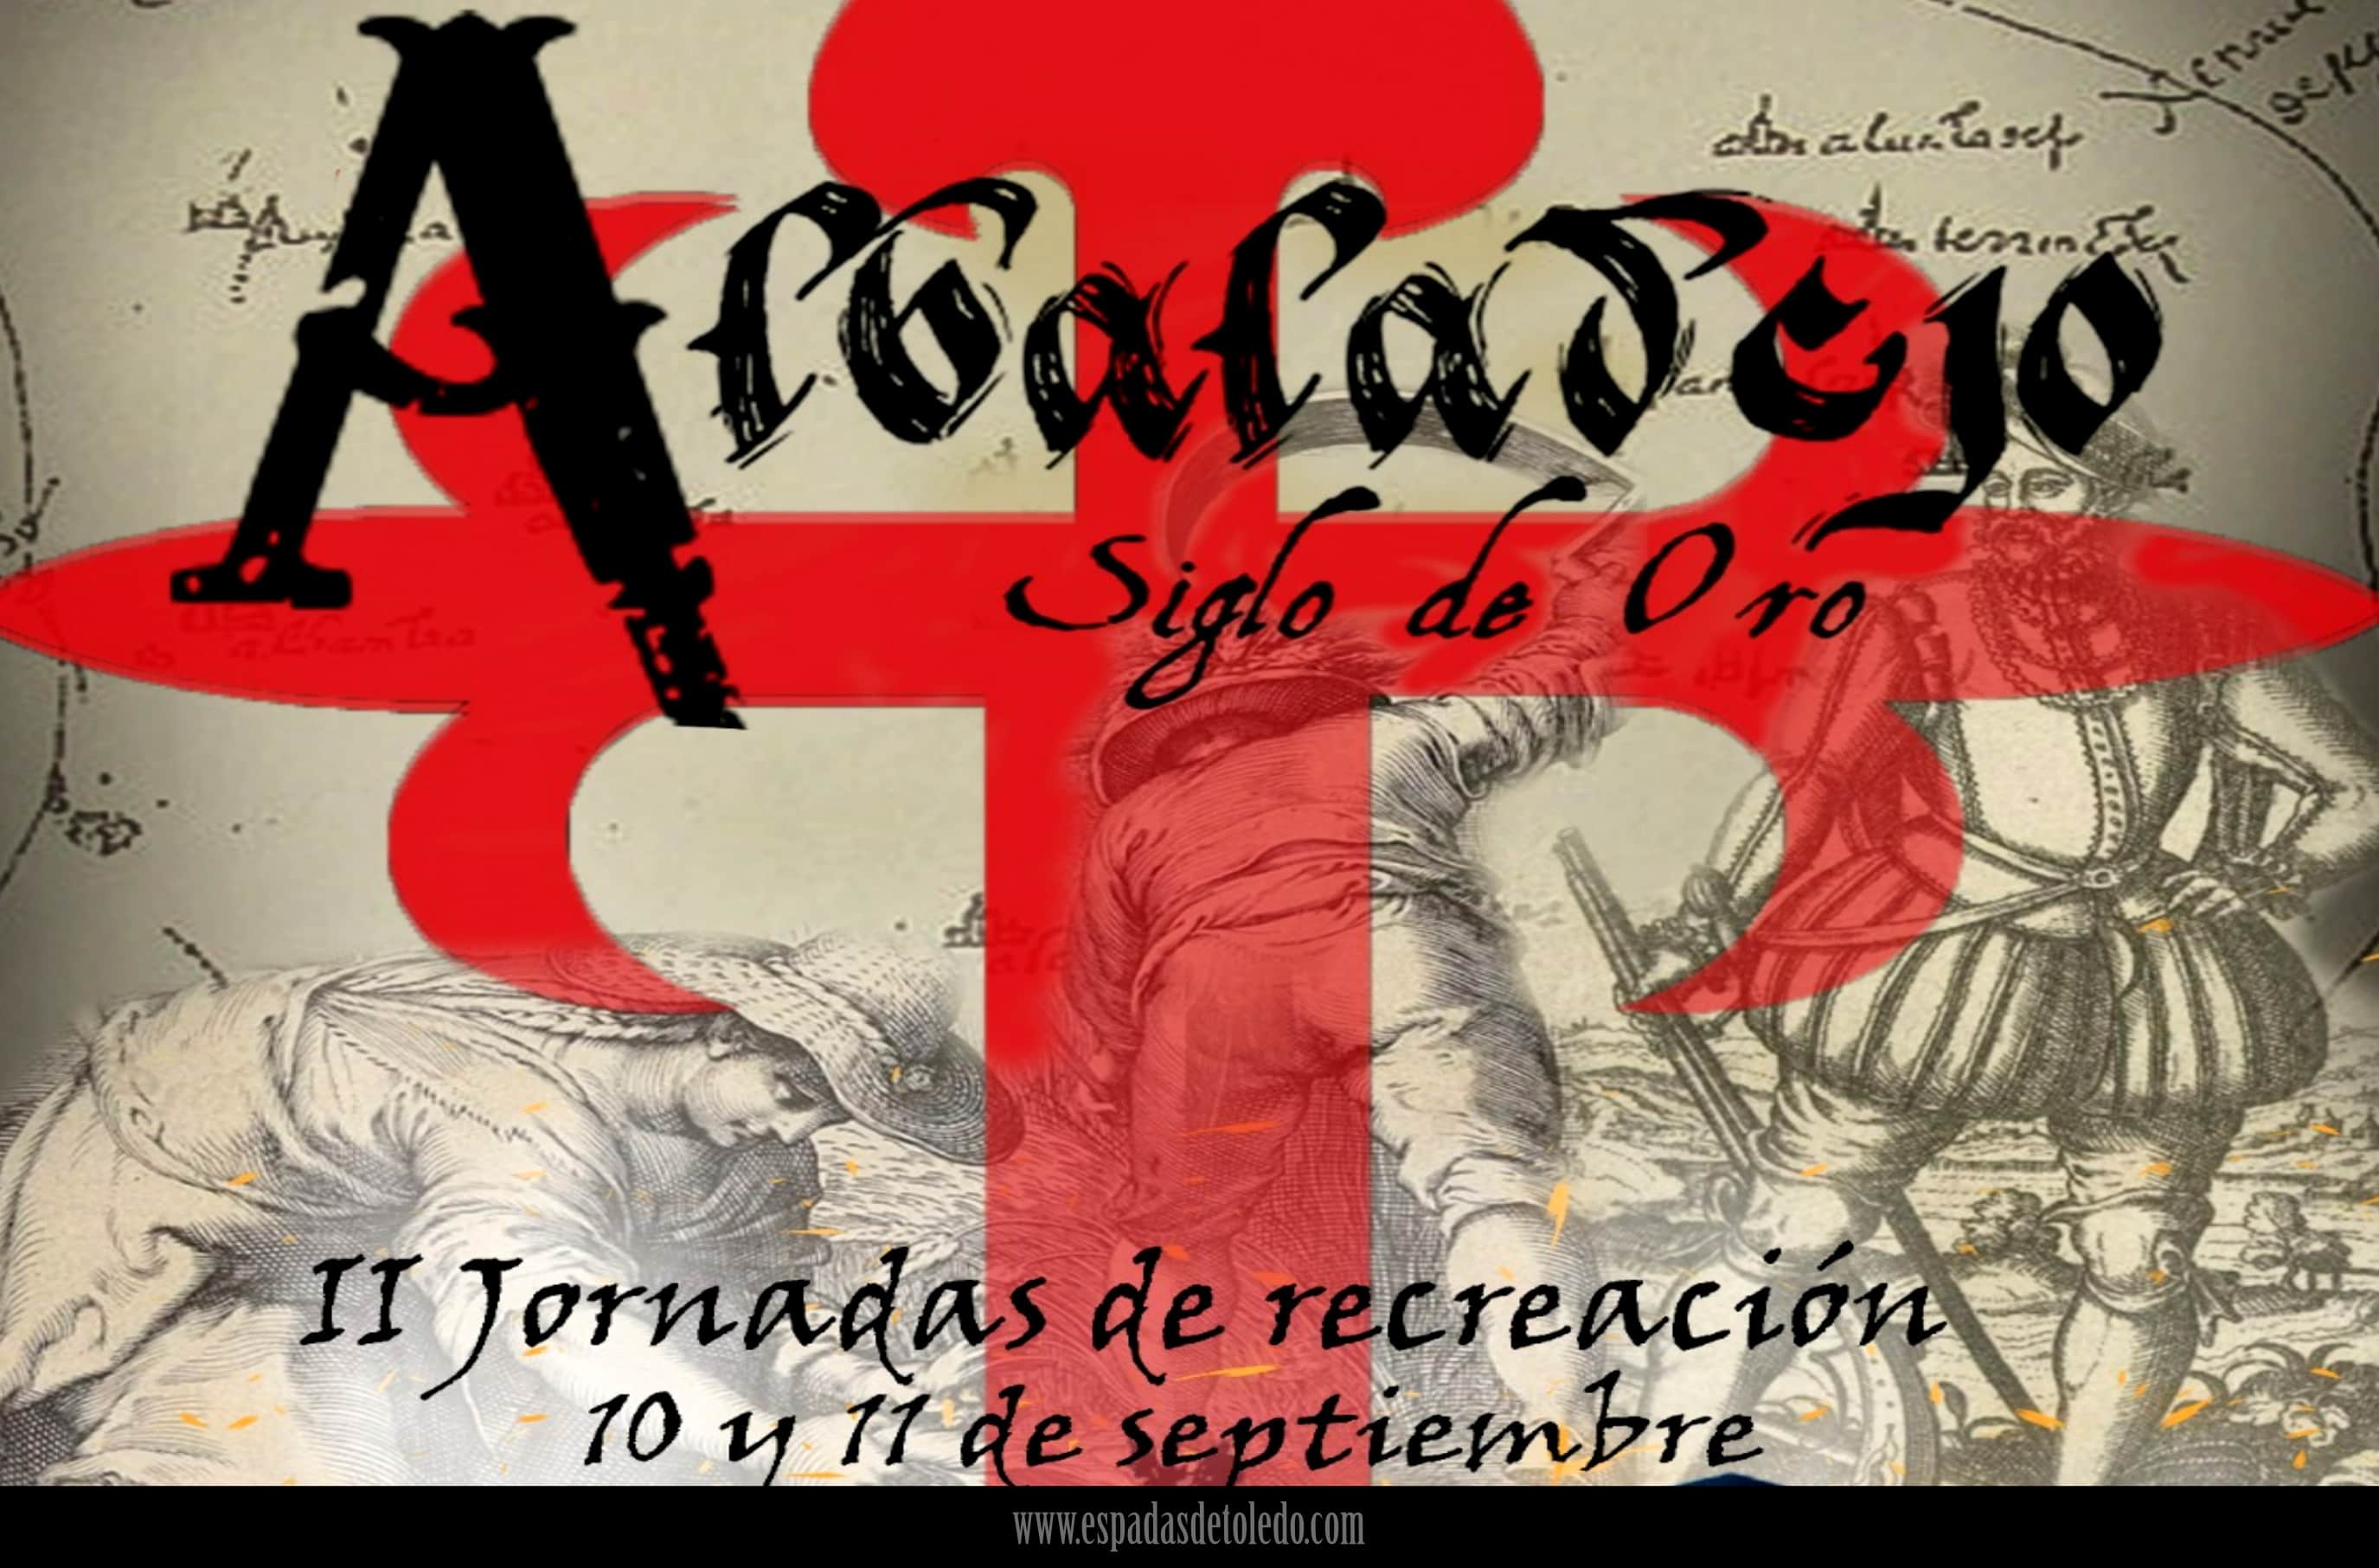 Recreación histórica, espadas y damasquinado de Toledo con Albaladejo Siglo De Oro